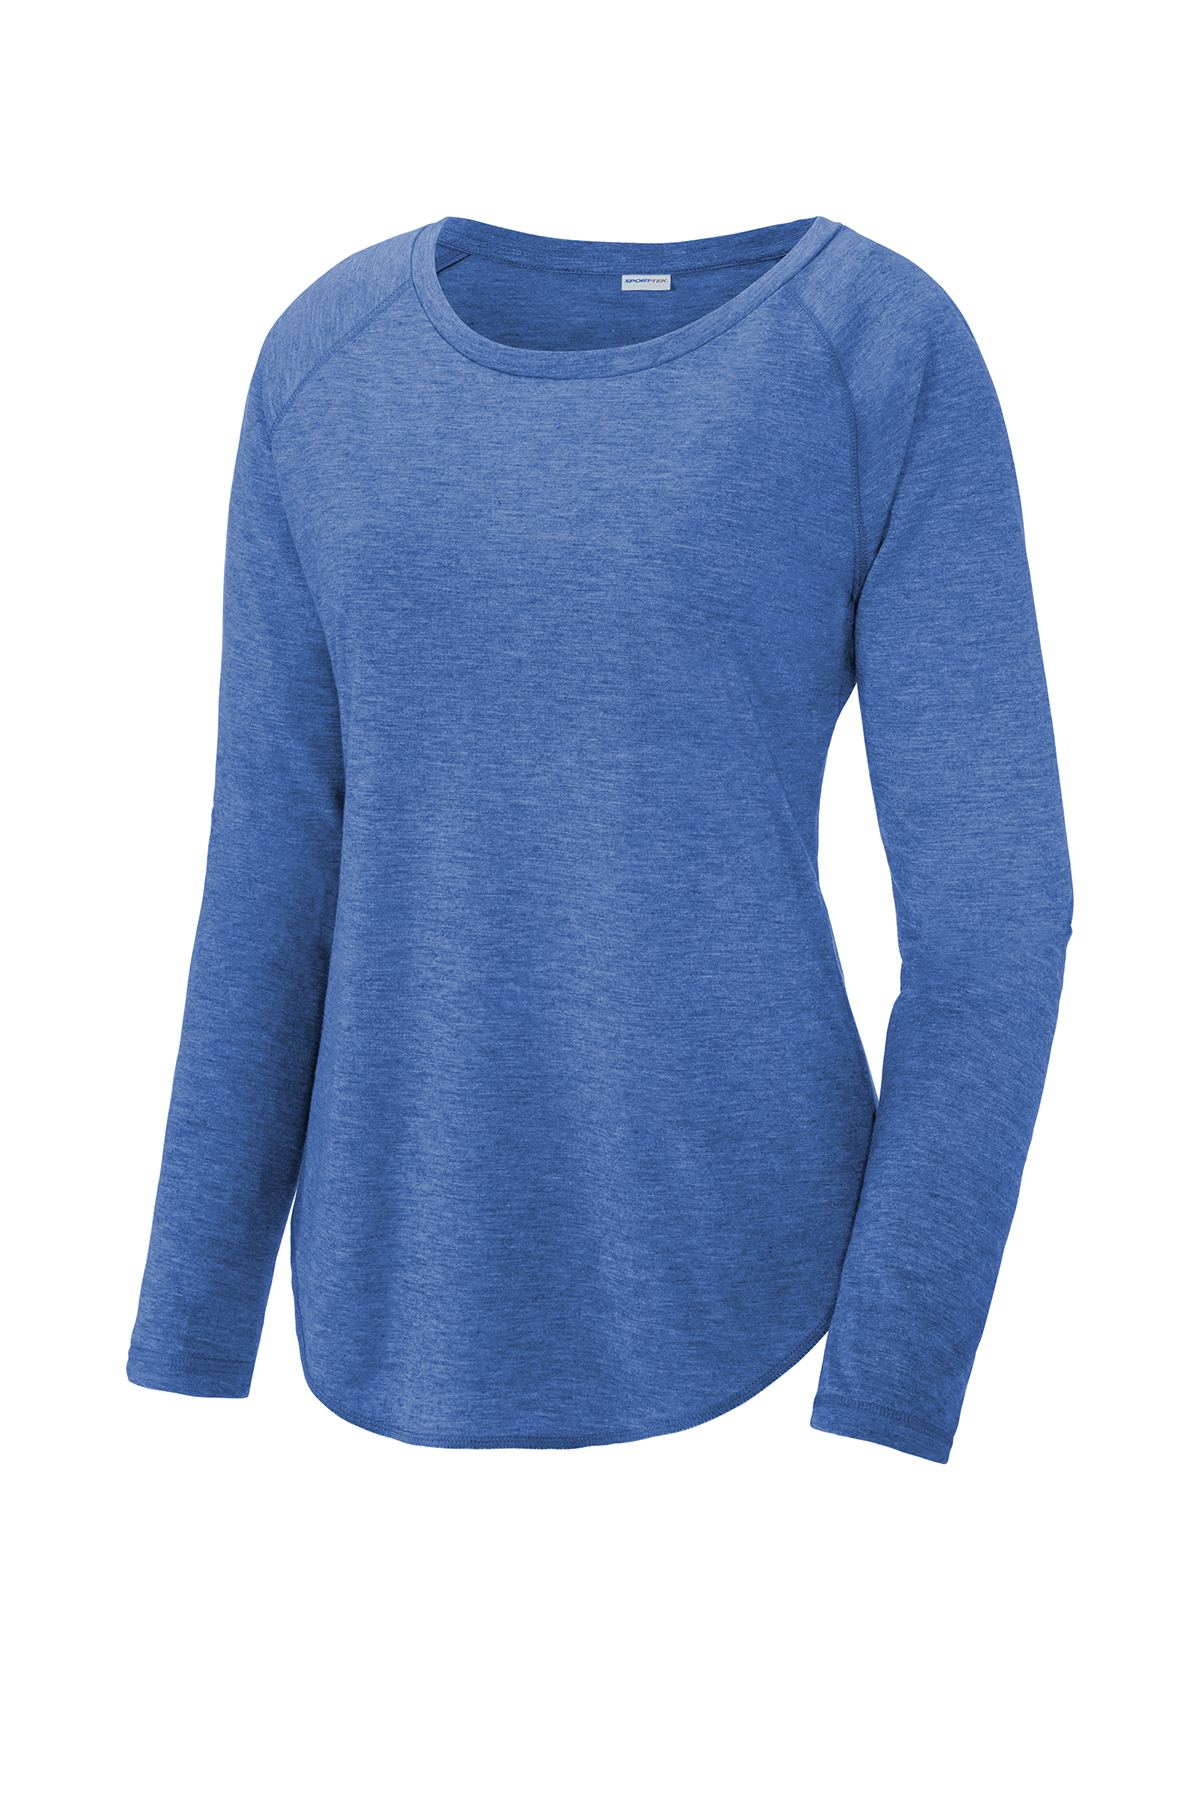 Lids St. Louis Blues Concepts Sport Women's Marathon Knit Long Sleeve  V-Neck T-Shirt - Navy